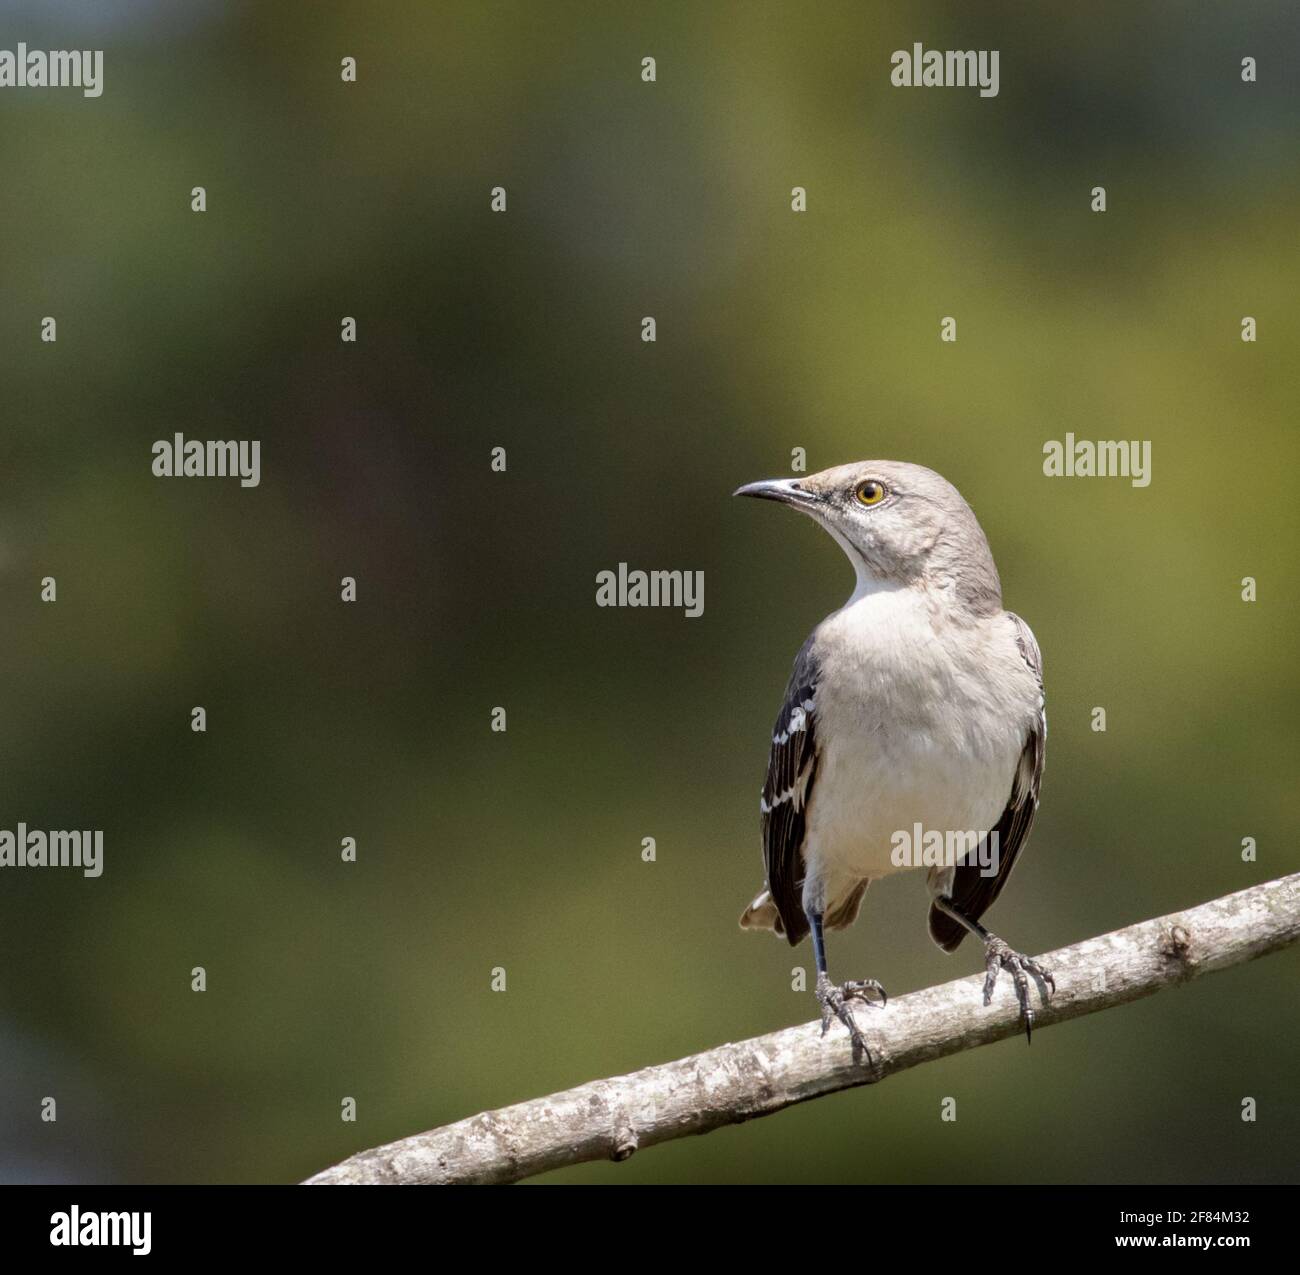 mockingbird settentrionale (Mimus polyglottos) - Contea di Hall, Georgia. Un mockingbird si trova nei suoi dintorni mentre è appollaiato su un arto. Foto Stock